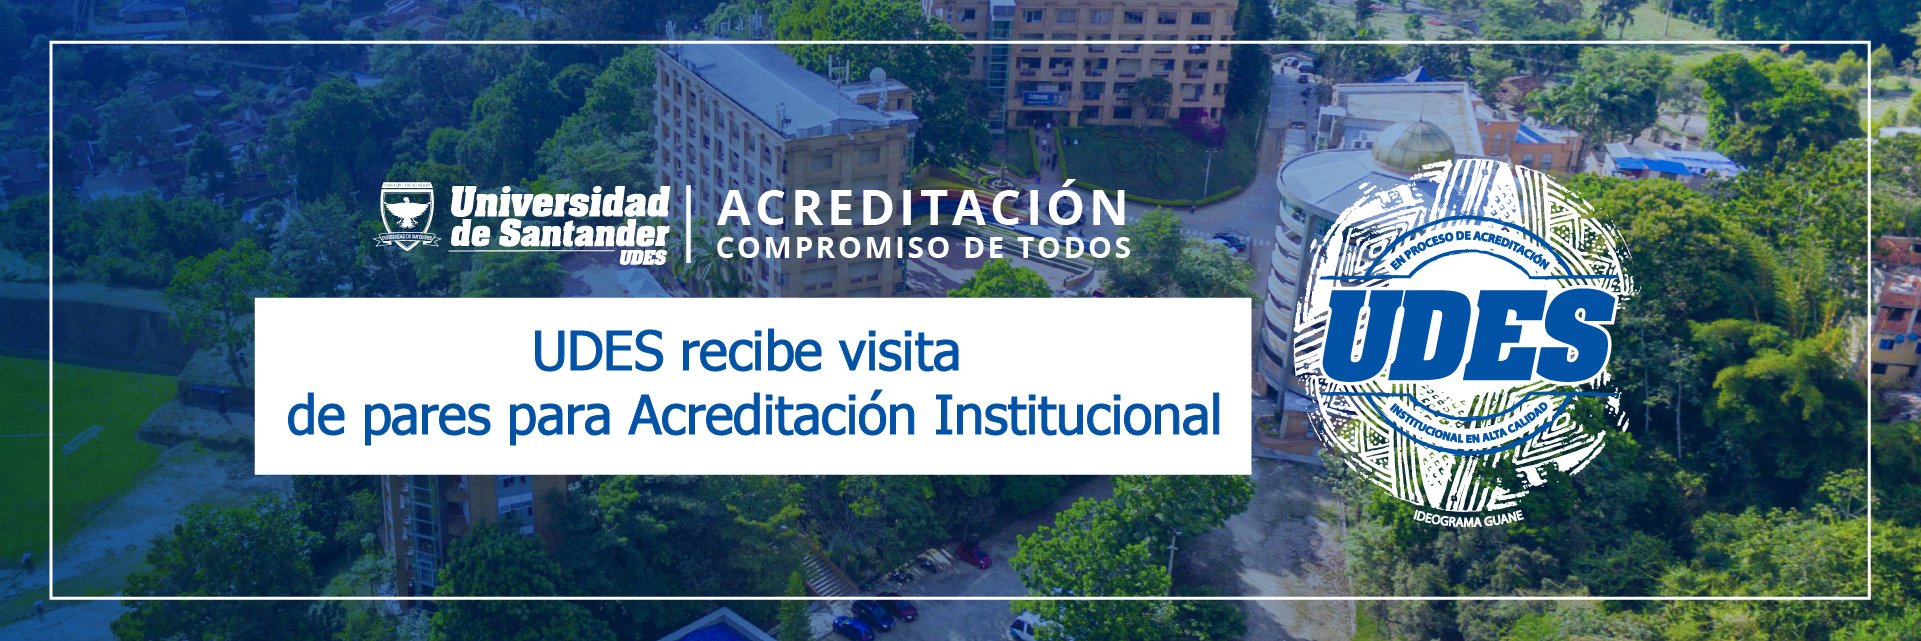 UDES recibe visita de pares académicos para Acreditación Institucional en Alta Calidad